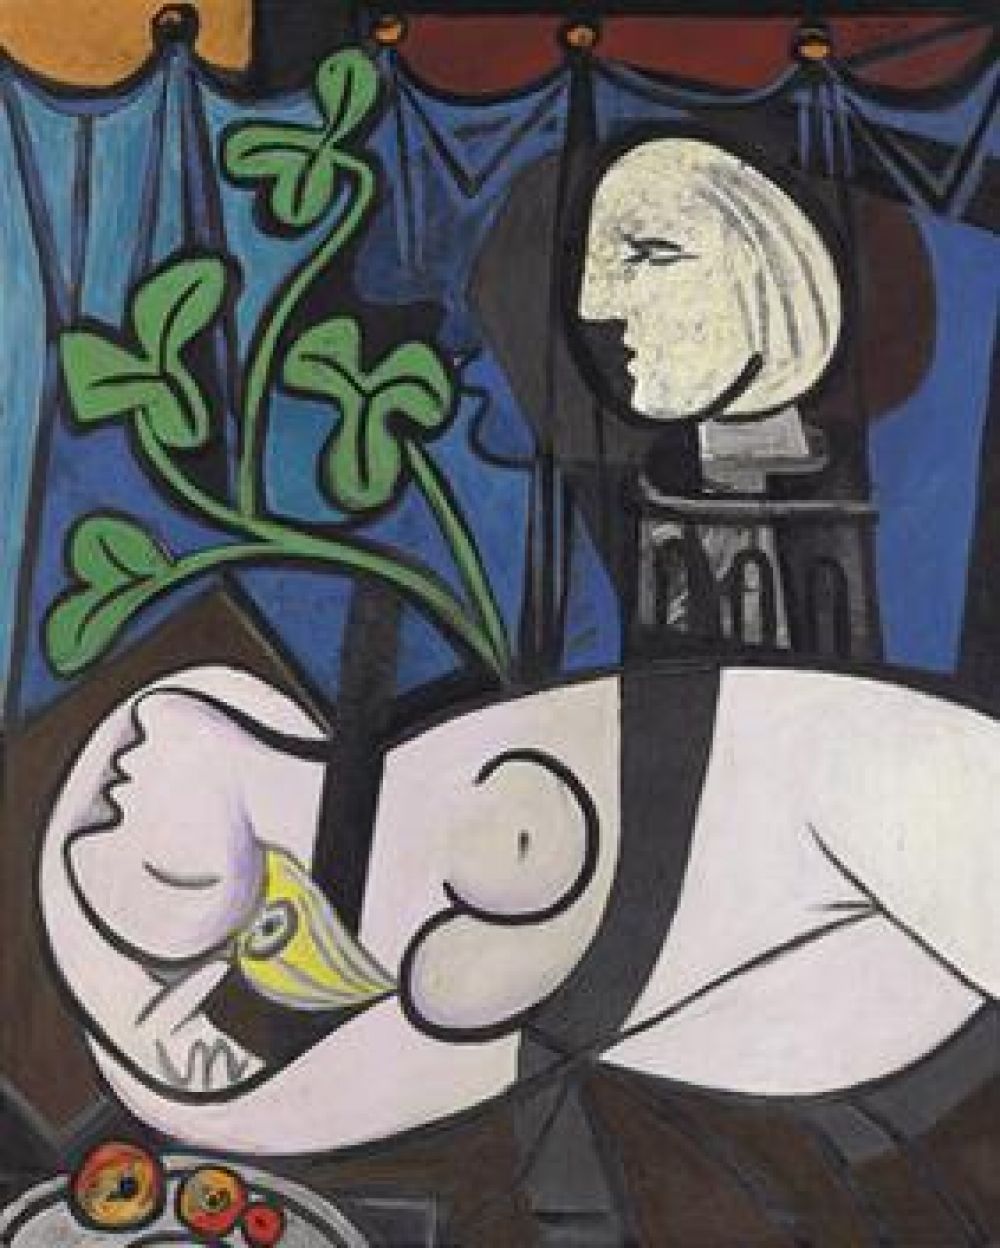 «Обнажённая, зелёные листья и бюст» Пабло Пикассо - 106.5 млн долларов. Картина была продана на аукционе Christie's в Нью-Йорке 4 мая 2010 года